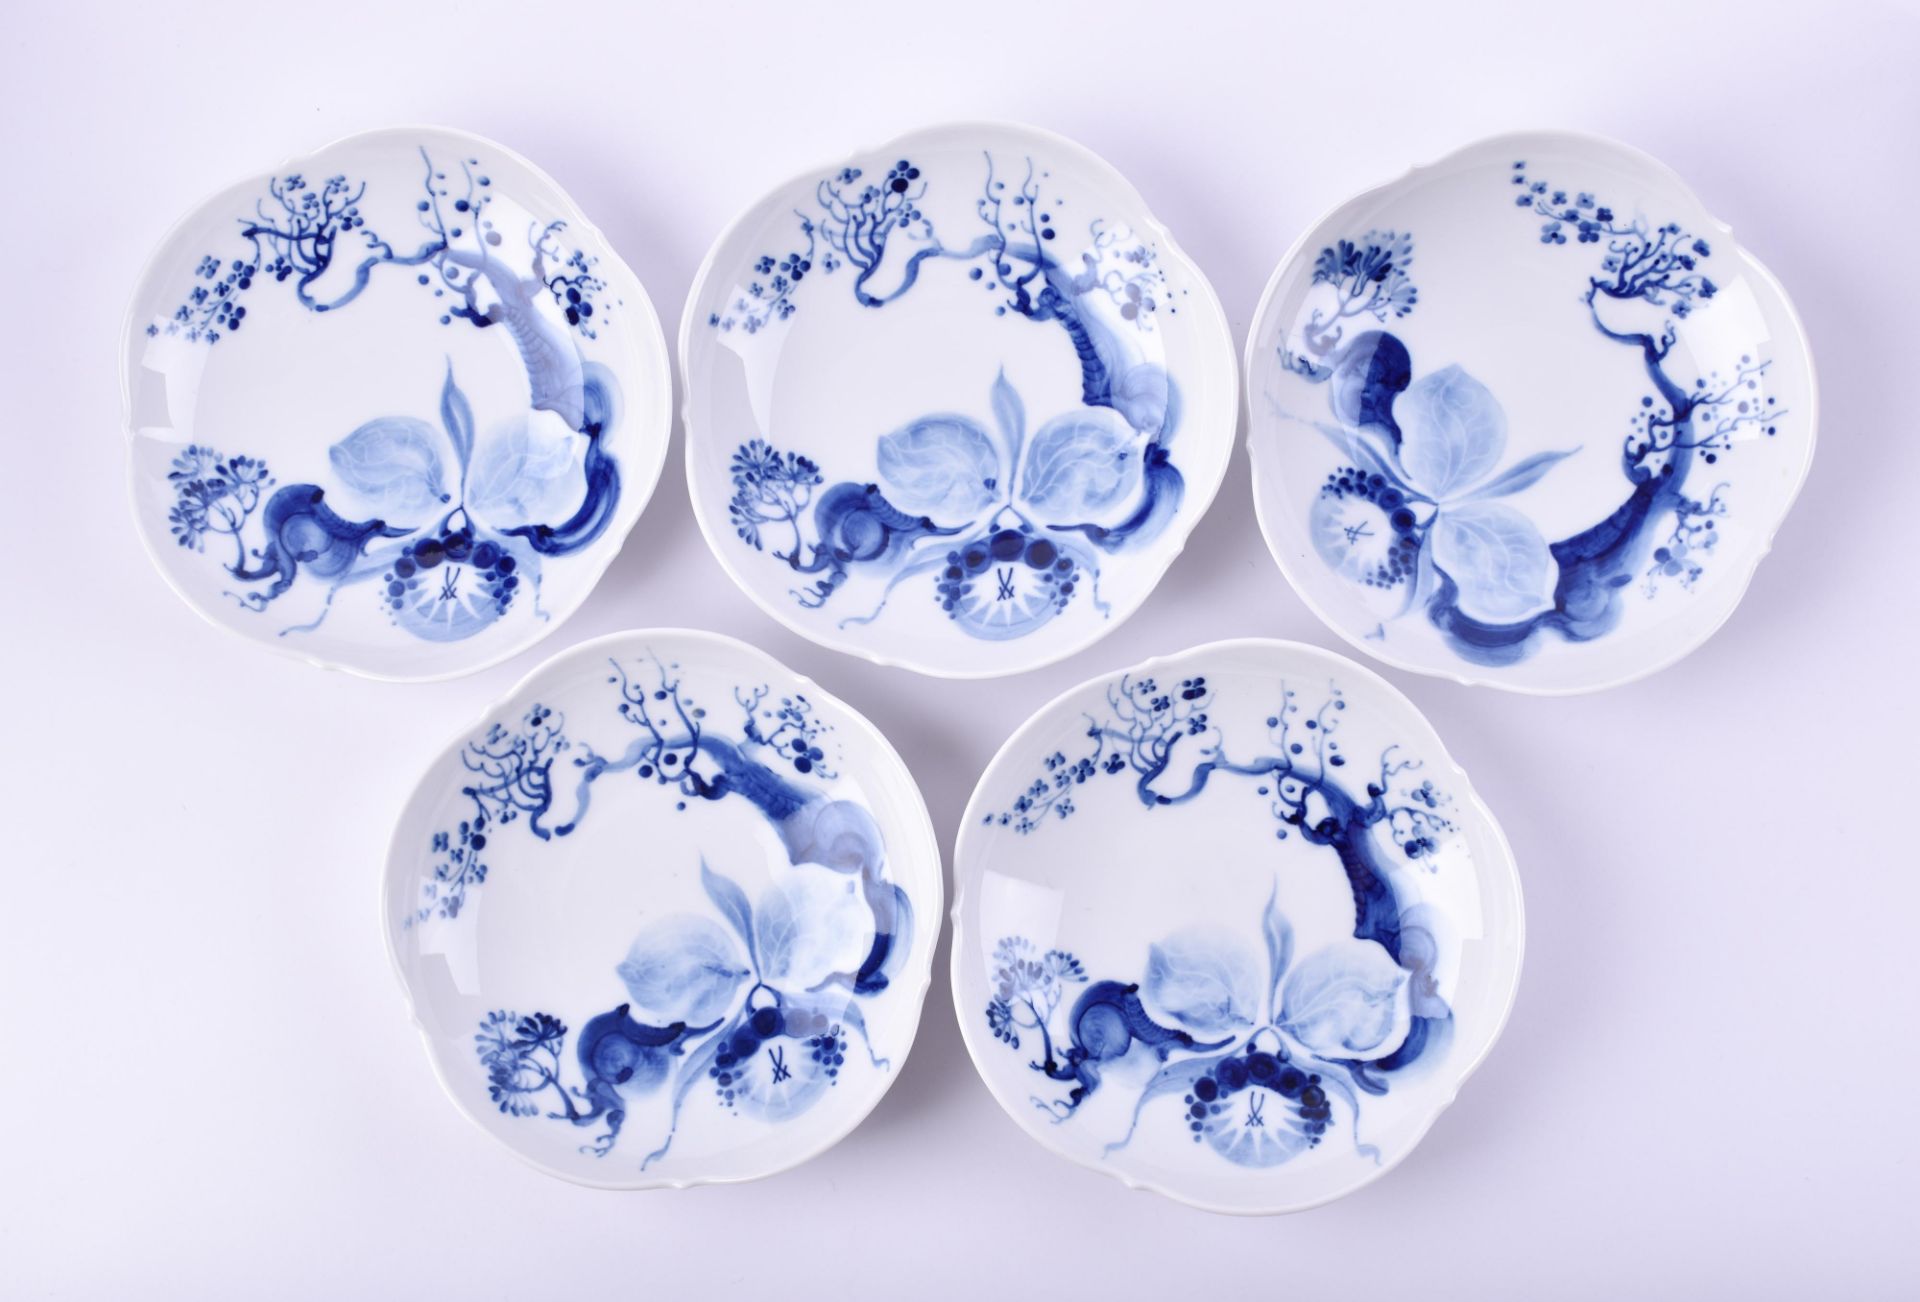  5 plates Meissen